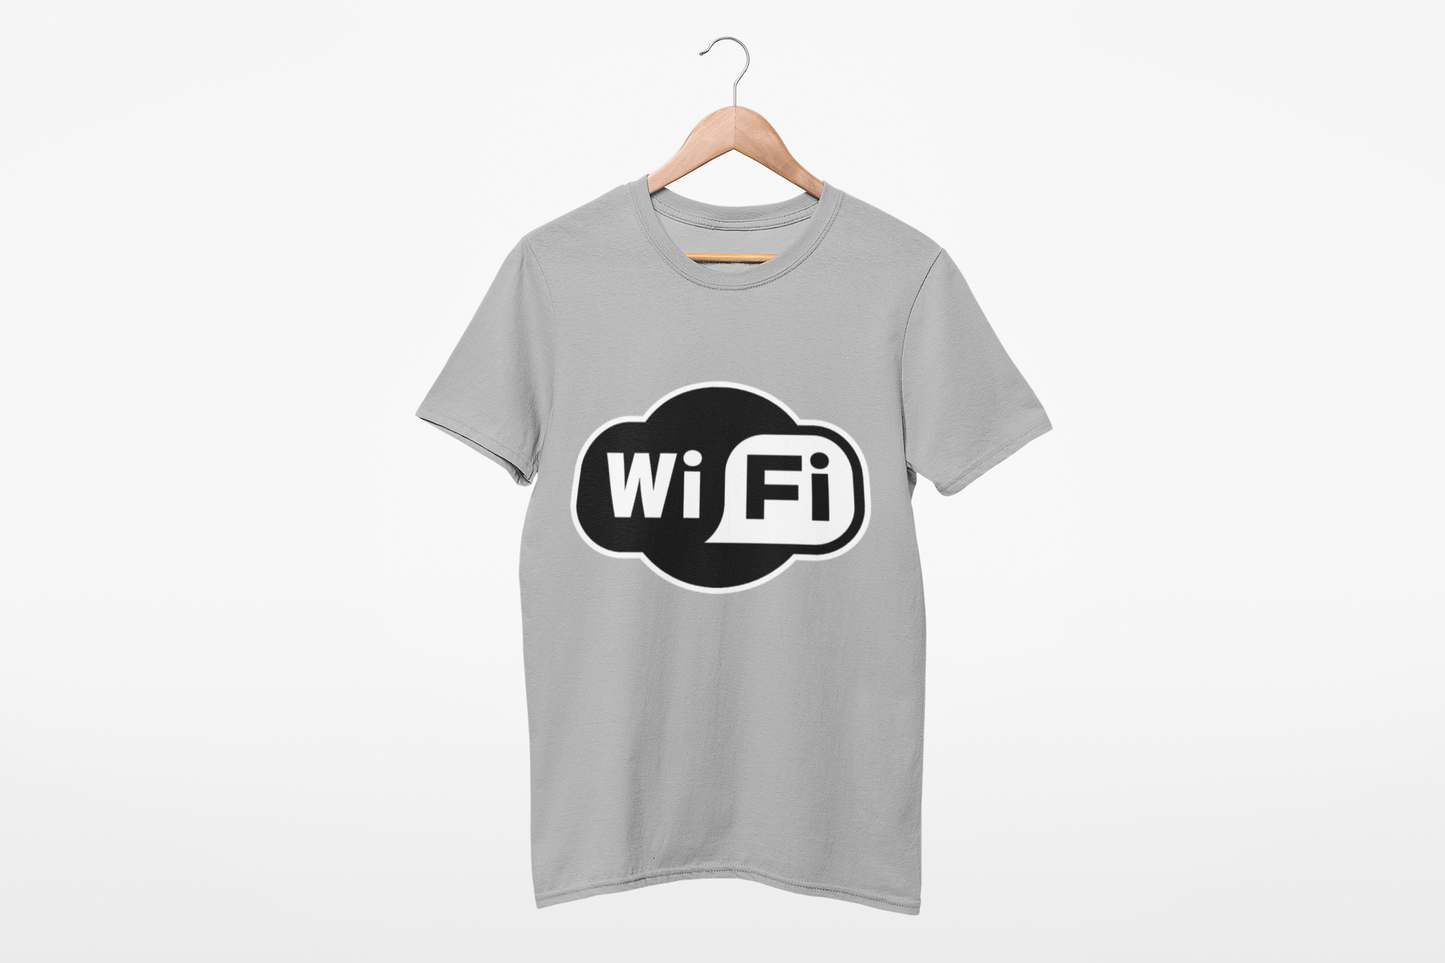 WiFi T shirt